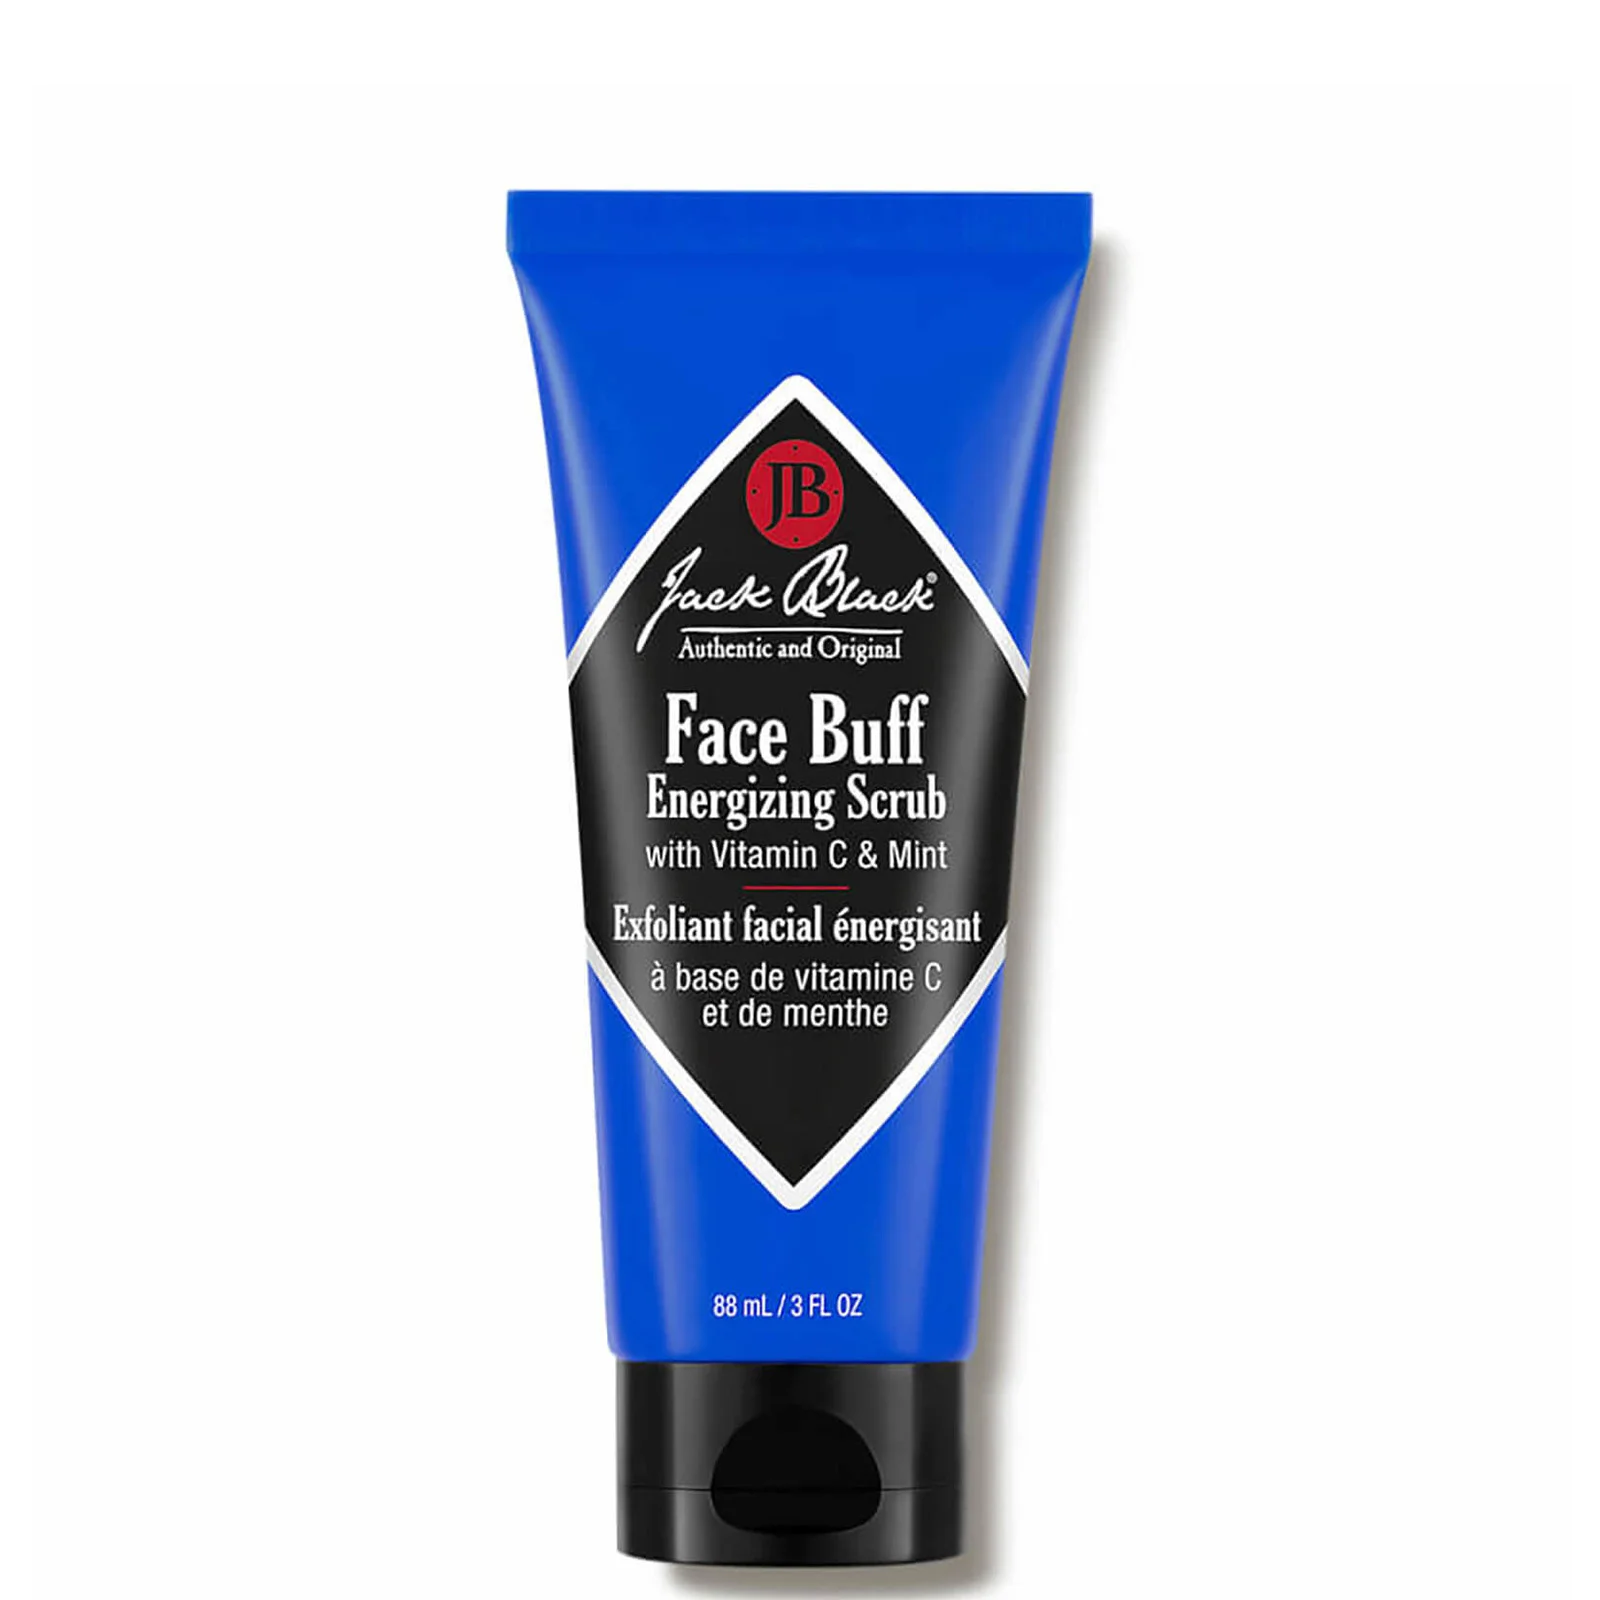 Jack Black Face Buff Energizing Scrub Image 1